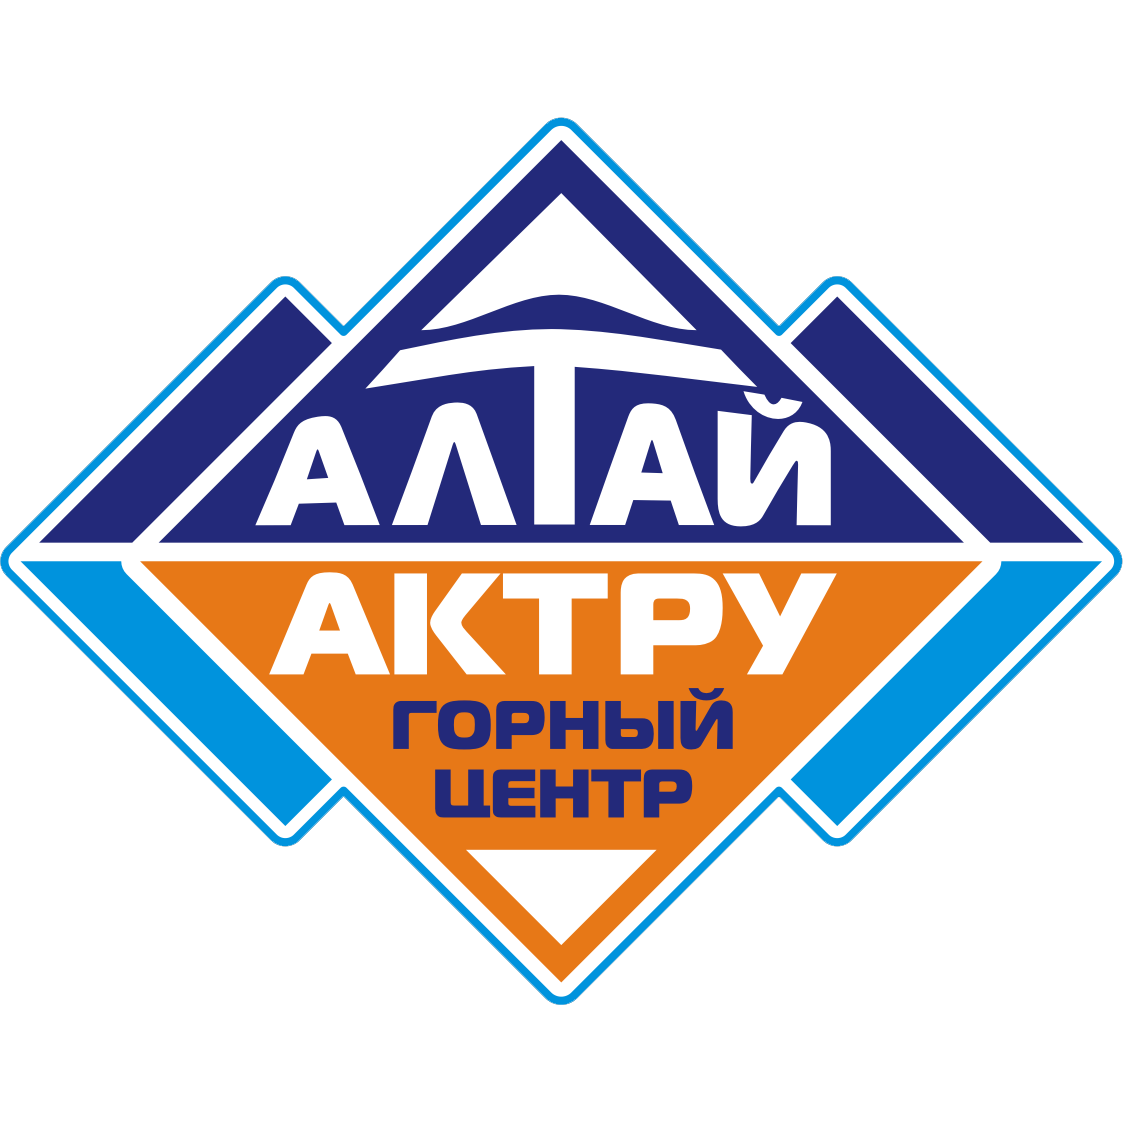 Горный центр «Алтай-Актру» picture pic